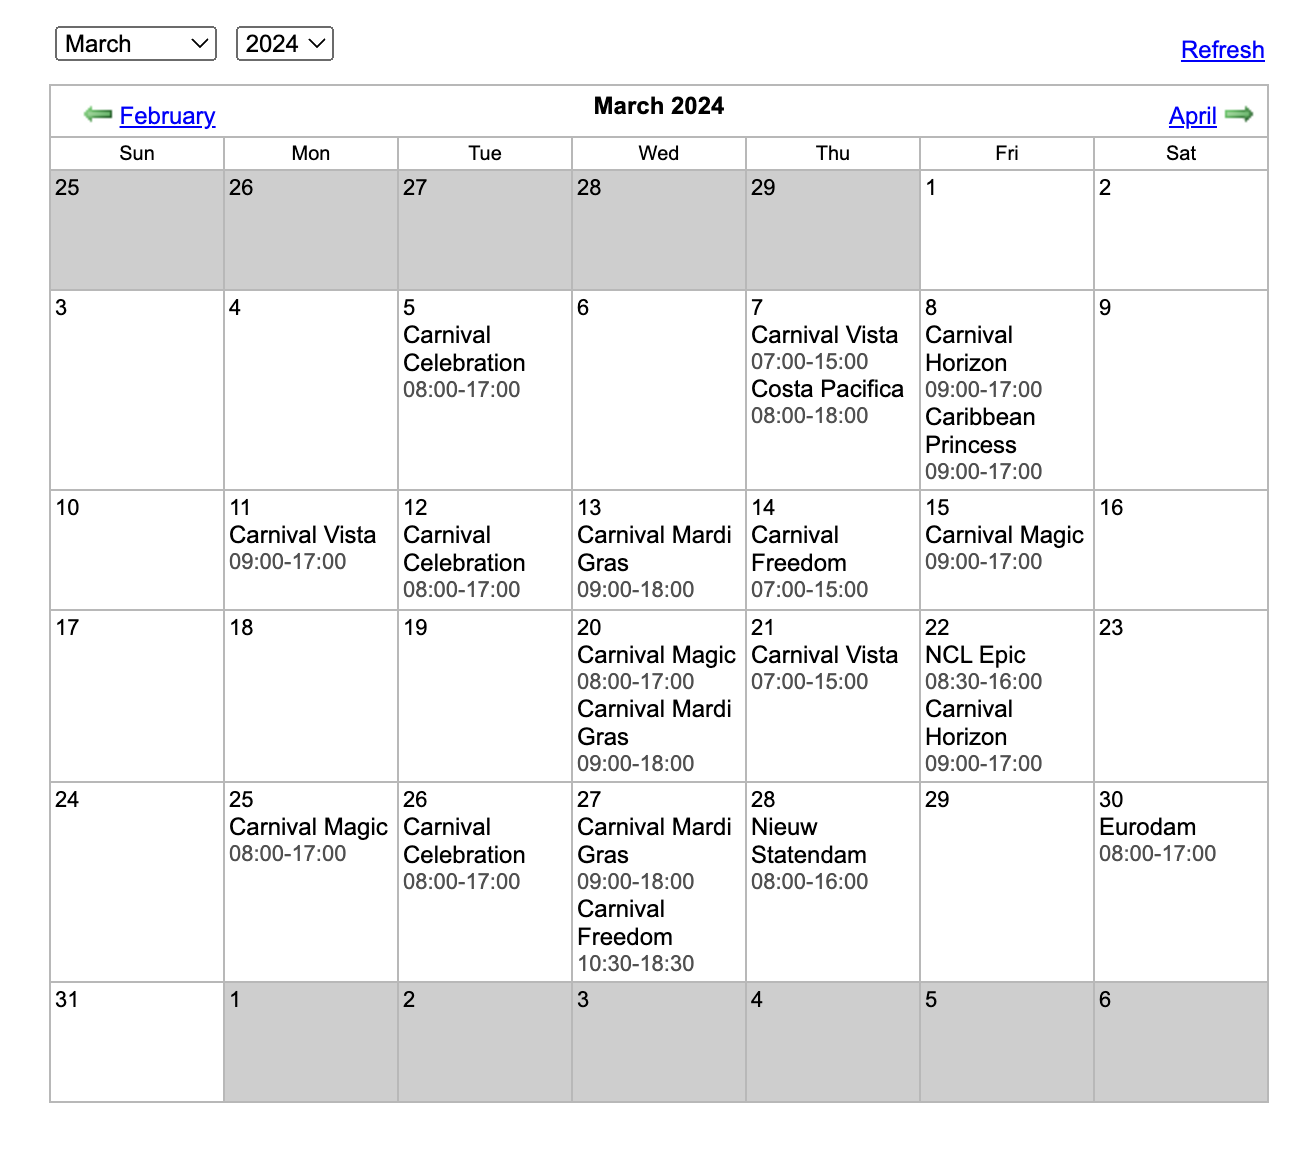 Amber Cove March 2024 schedule